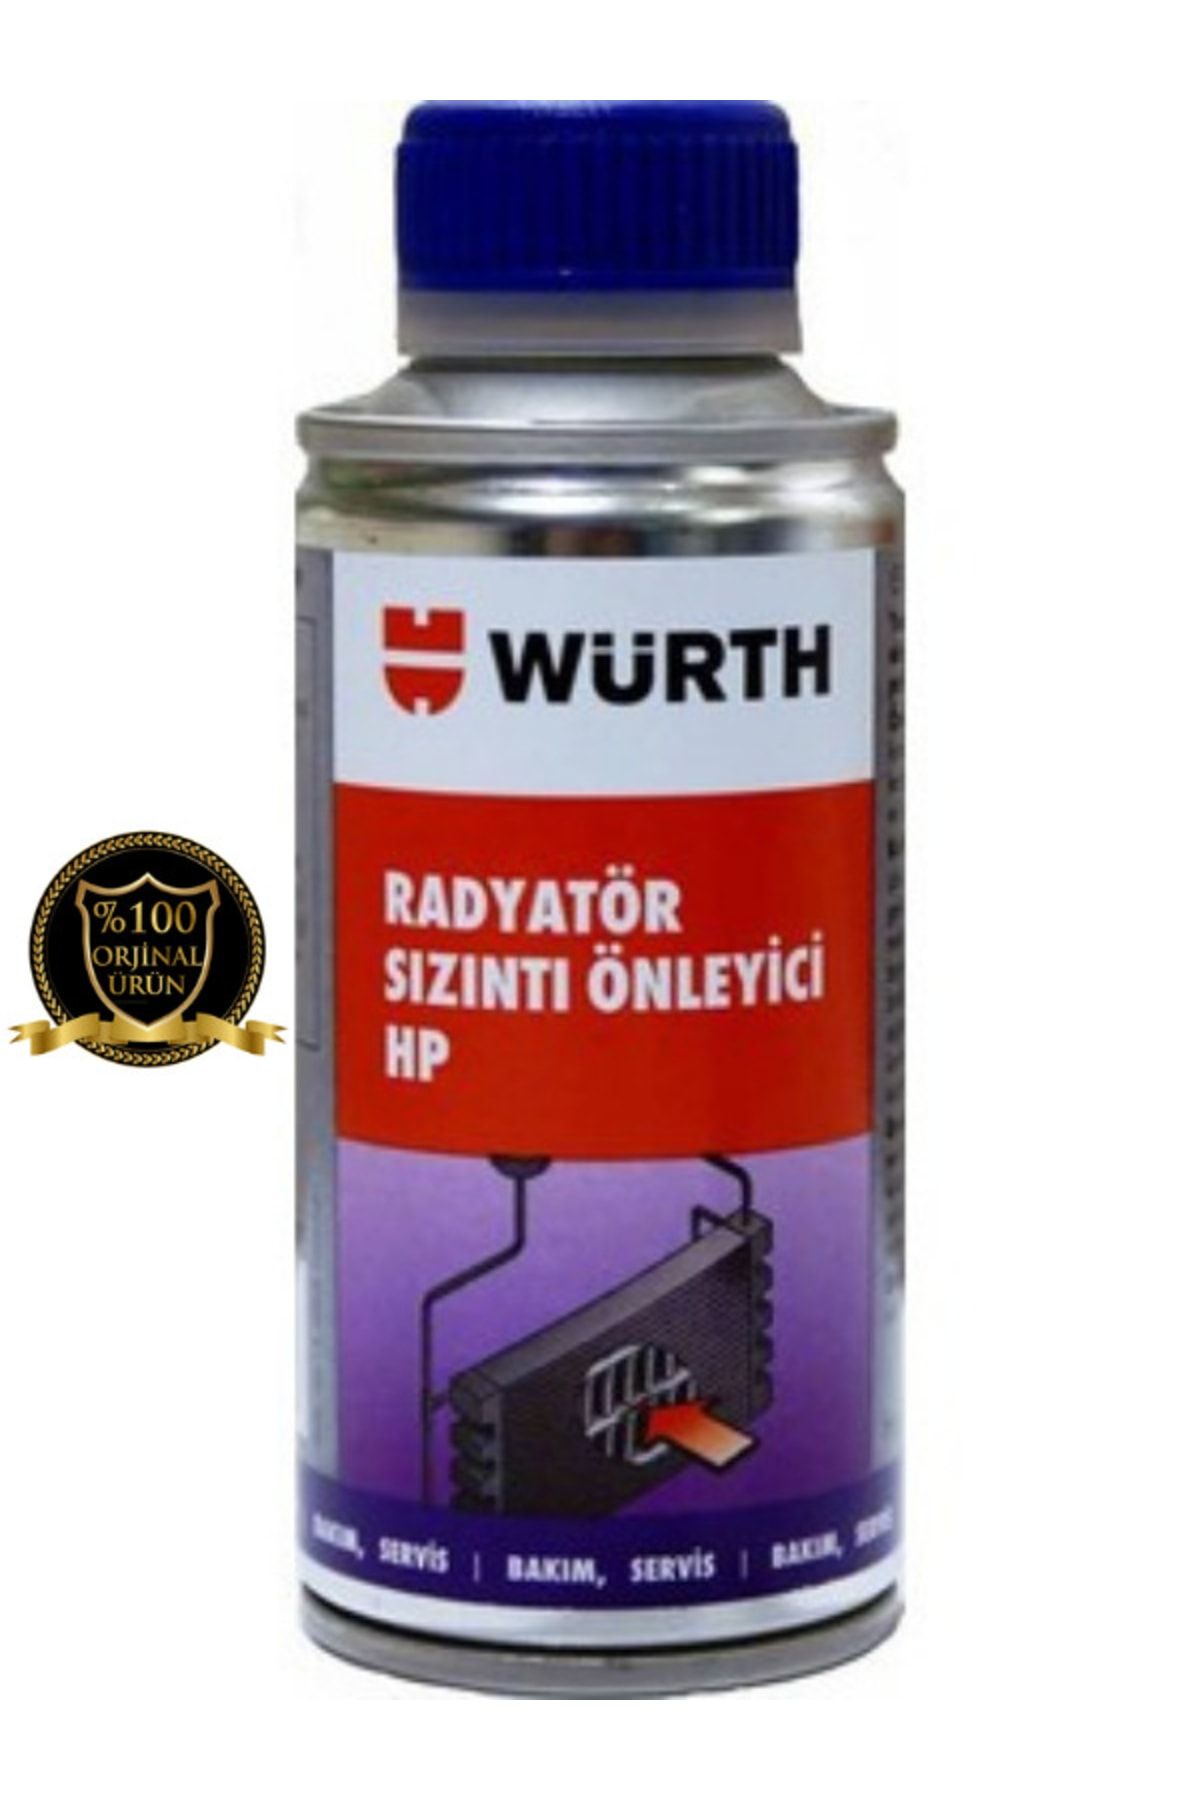 Würth Radyatör Sızıntı Önleyici Tıkayıcı Hp 150 ml ( )